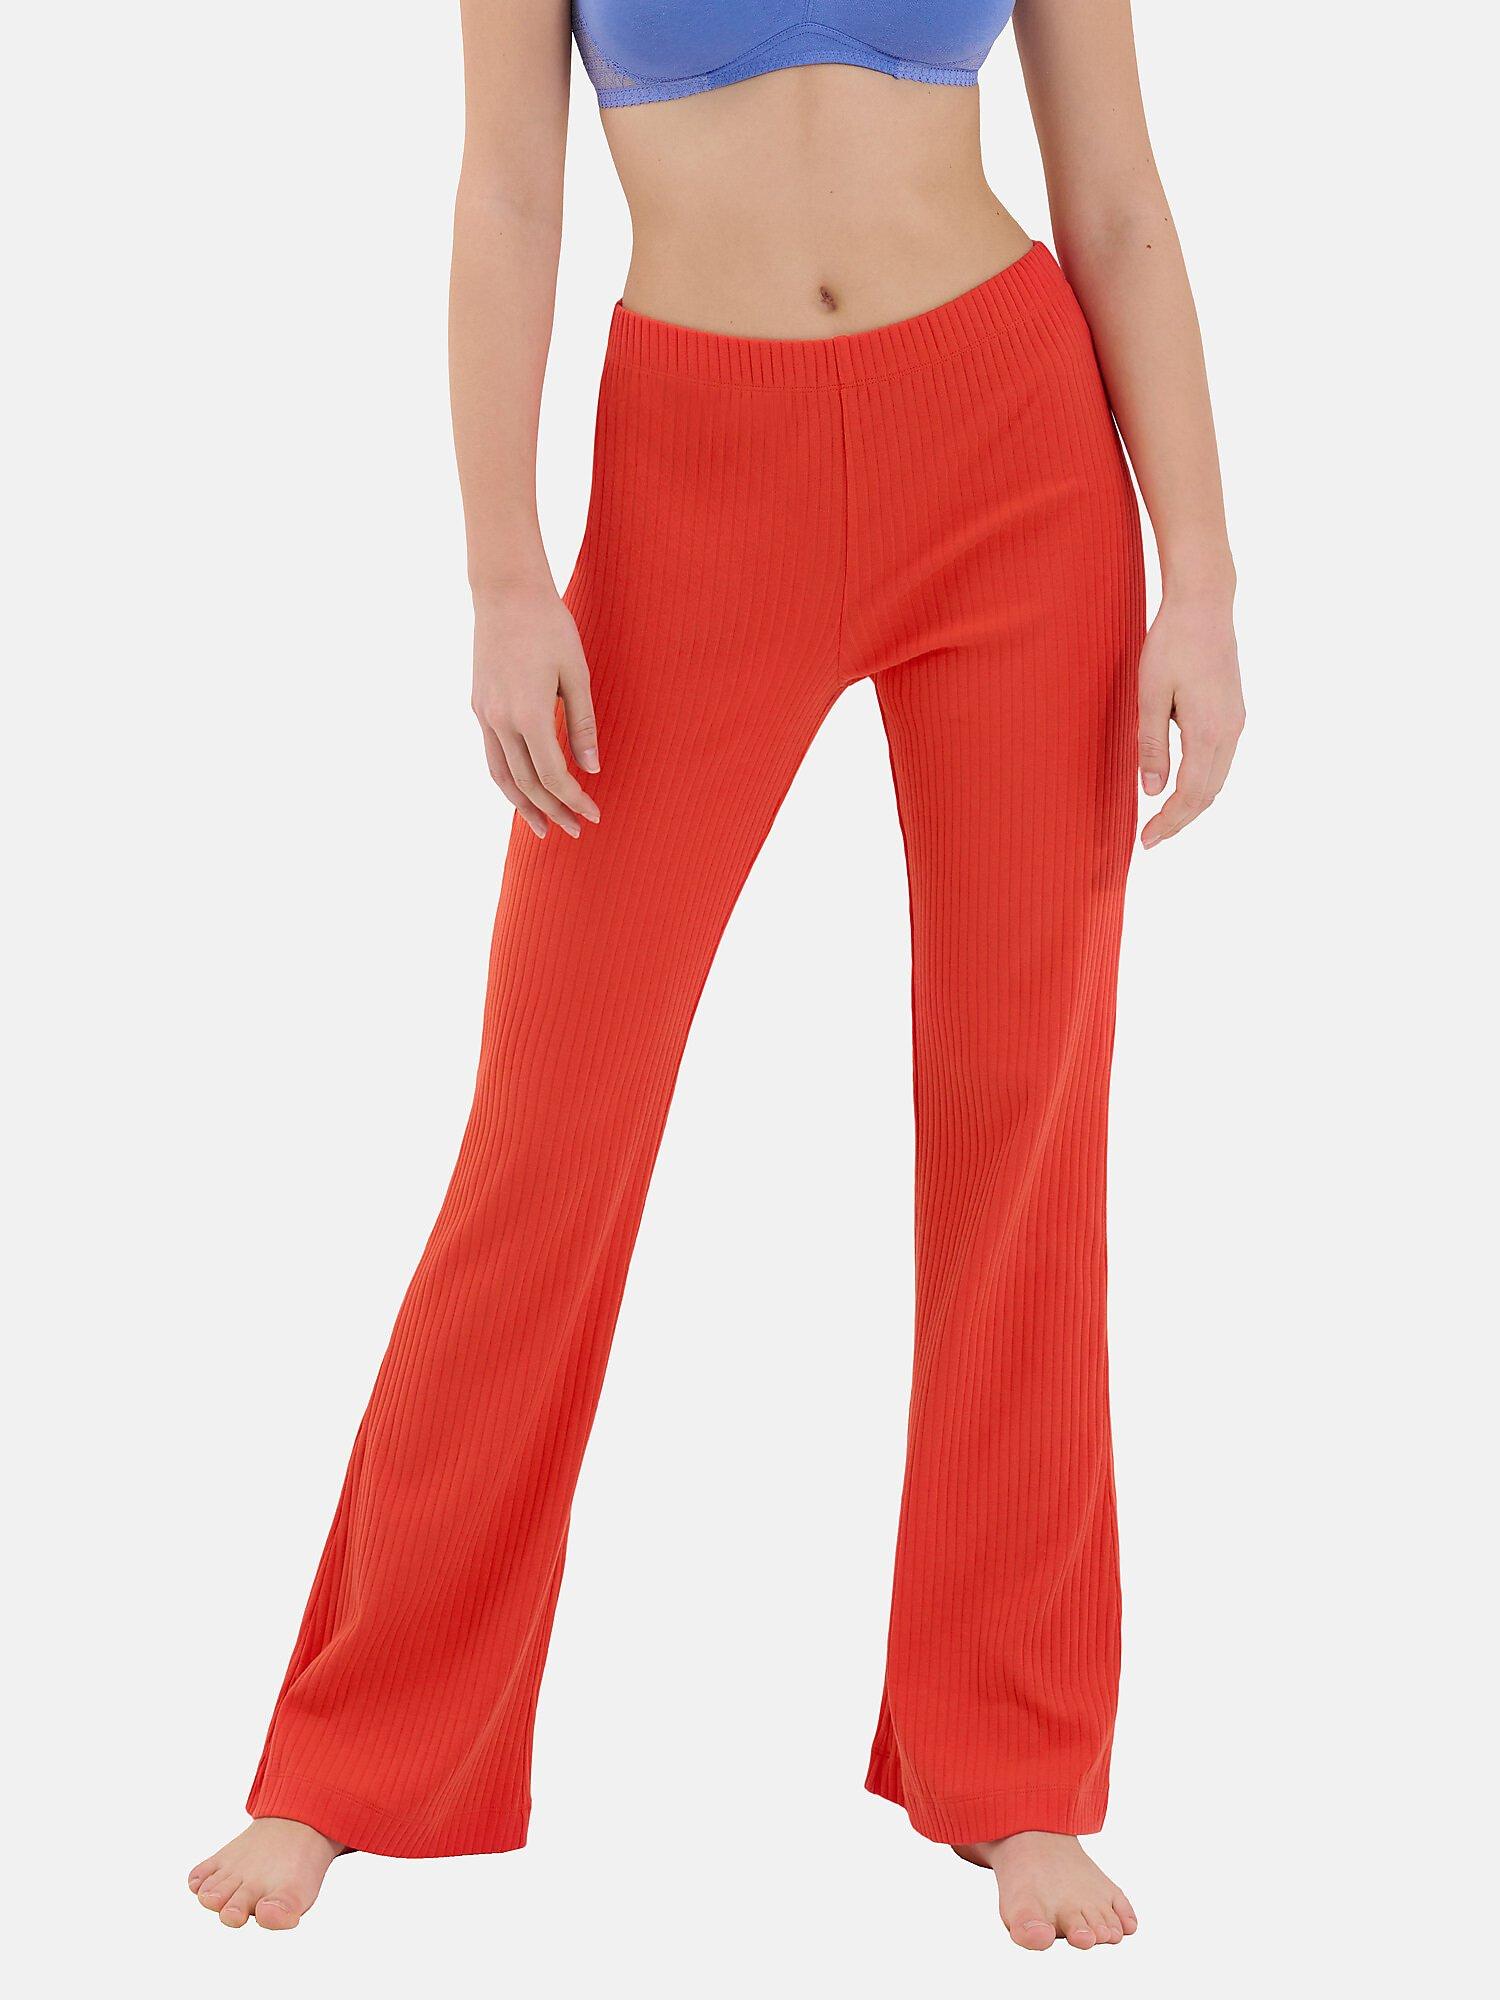 Pyjamastrümpfe Mit Ausgestellter Hose Lucky Damen Orange XL von Lisca